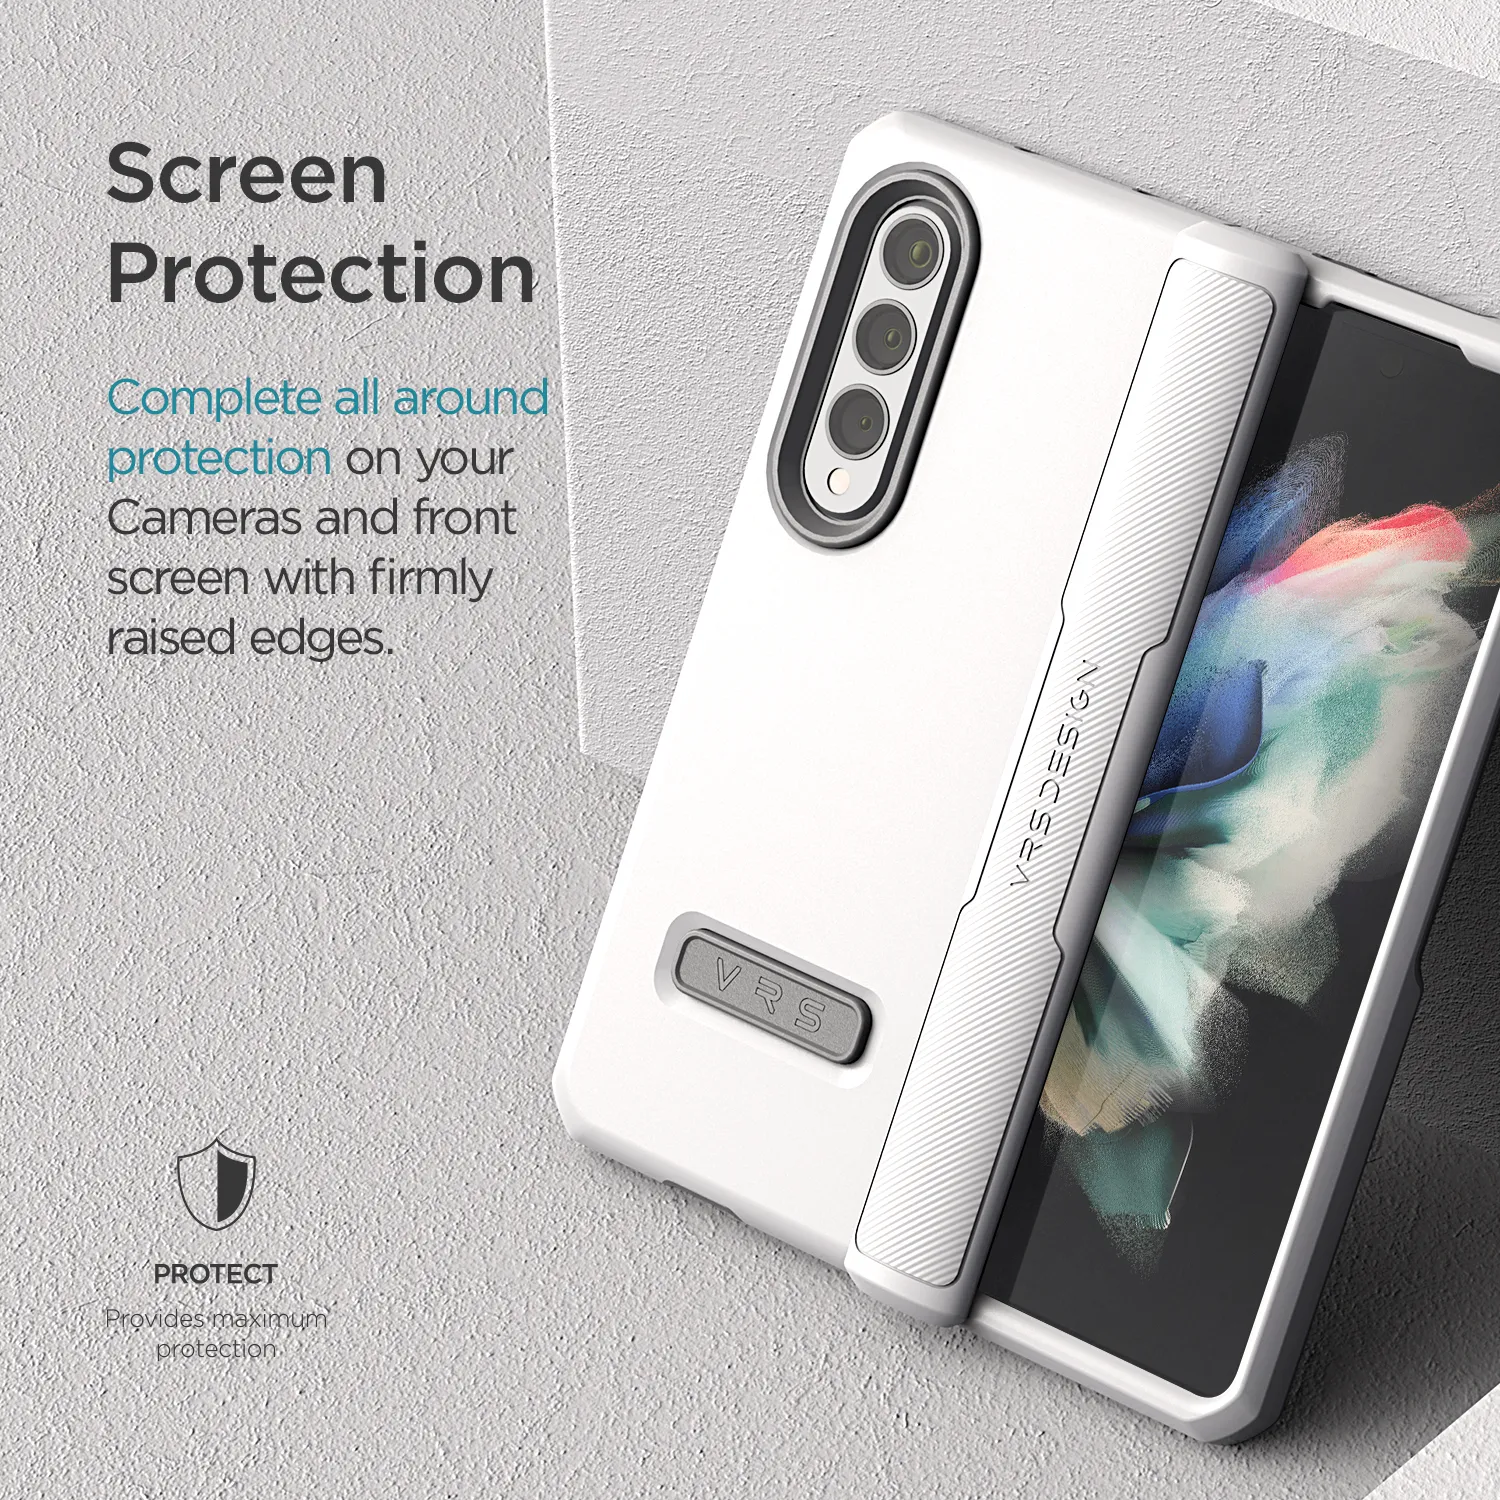 เคส VRS รุ่น Terra Guard Modern - Galaxy Z Fold 3 - สี White